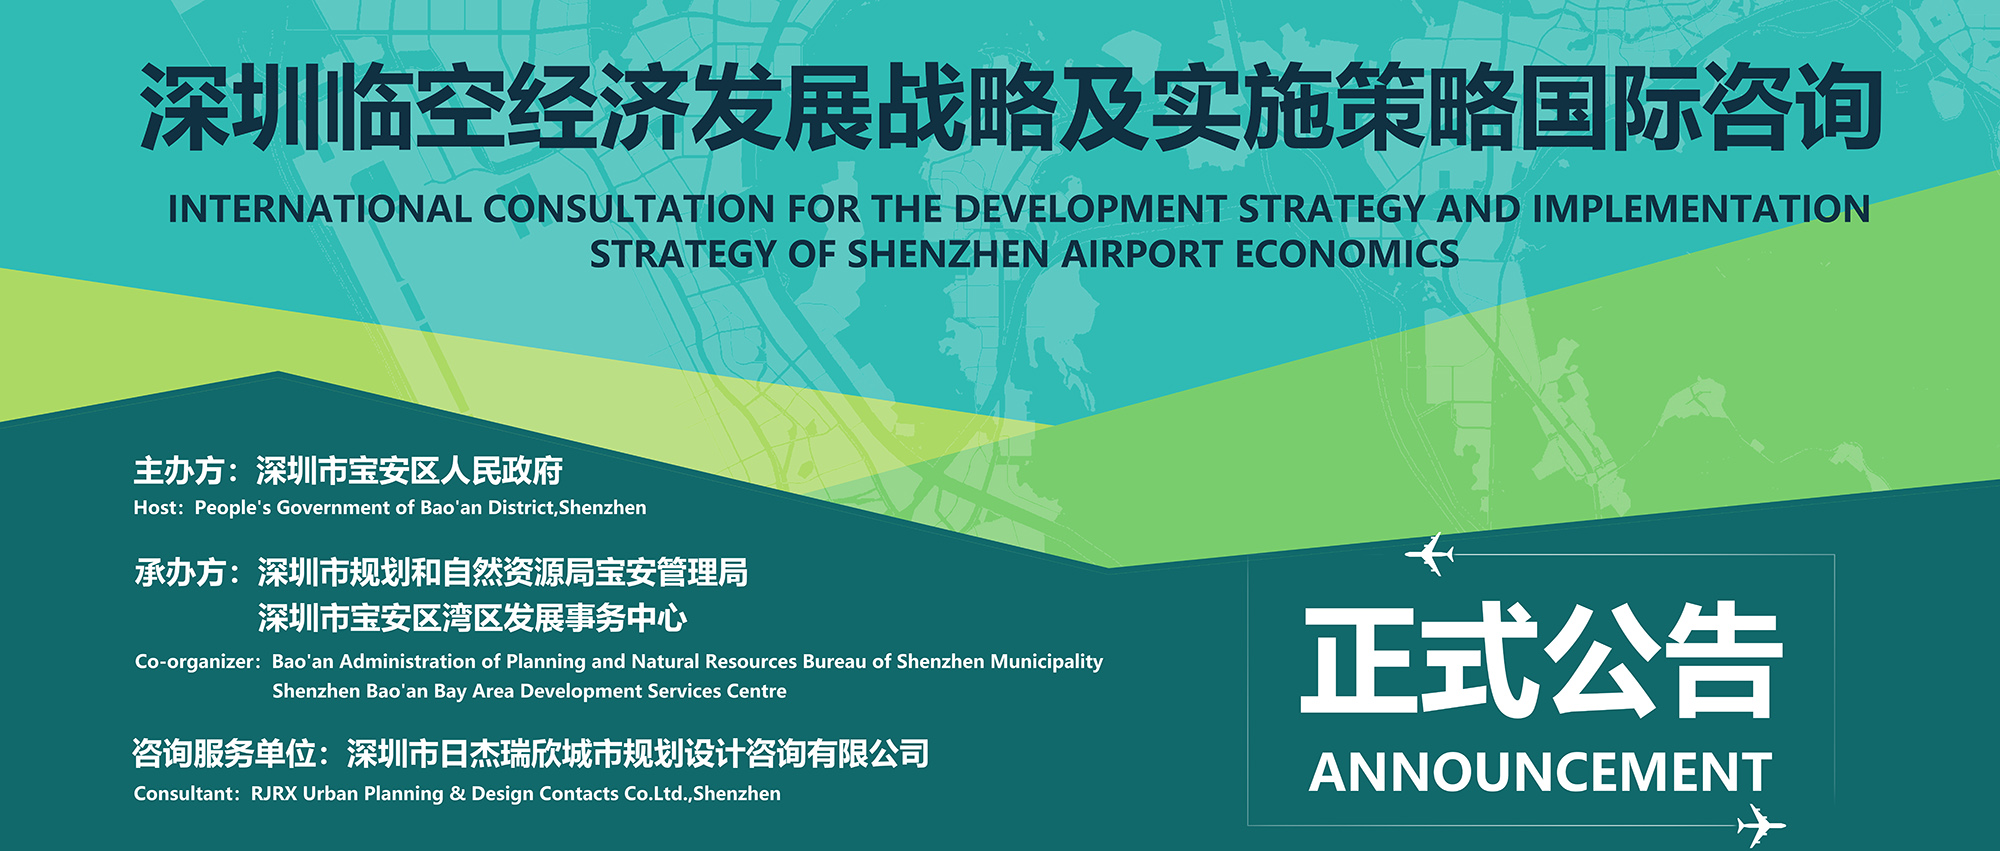 正式公告丨深圳临空经济发展战略及实施策略国际咨询